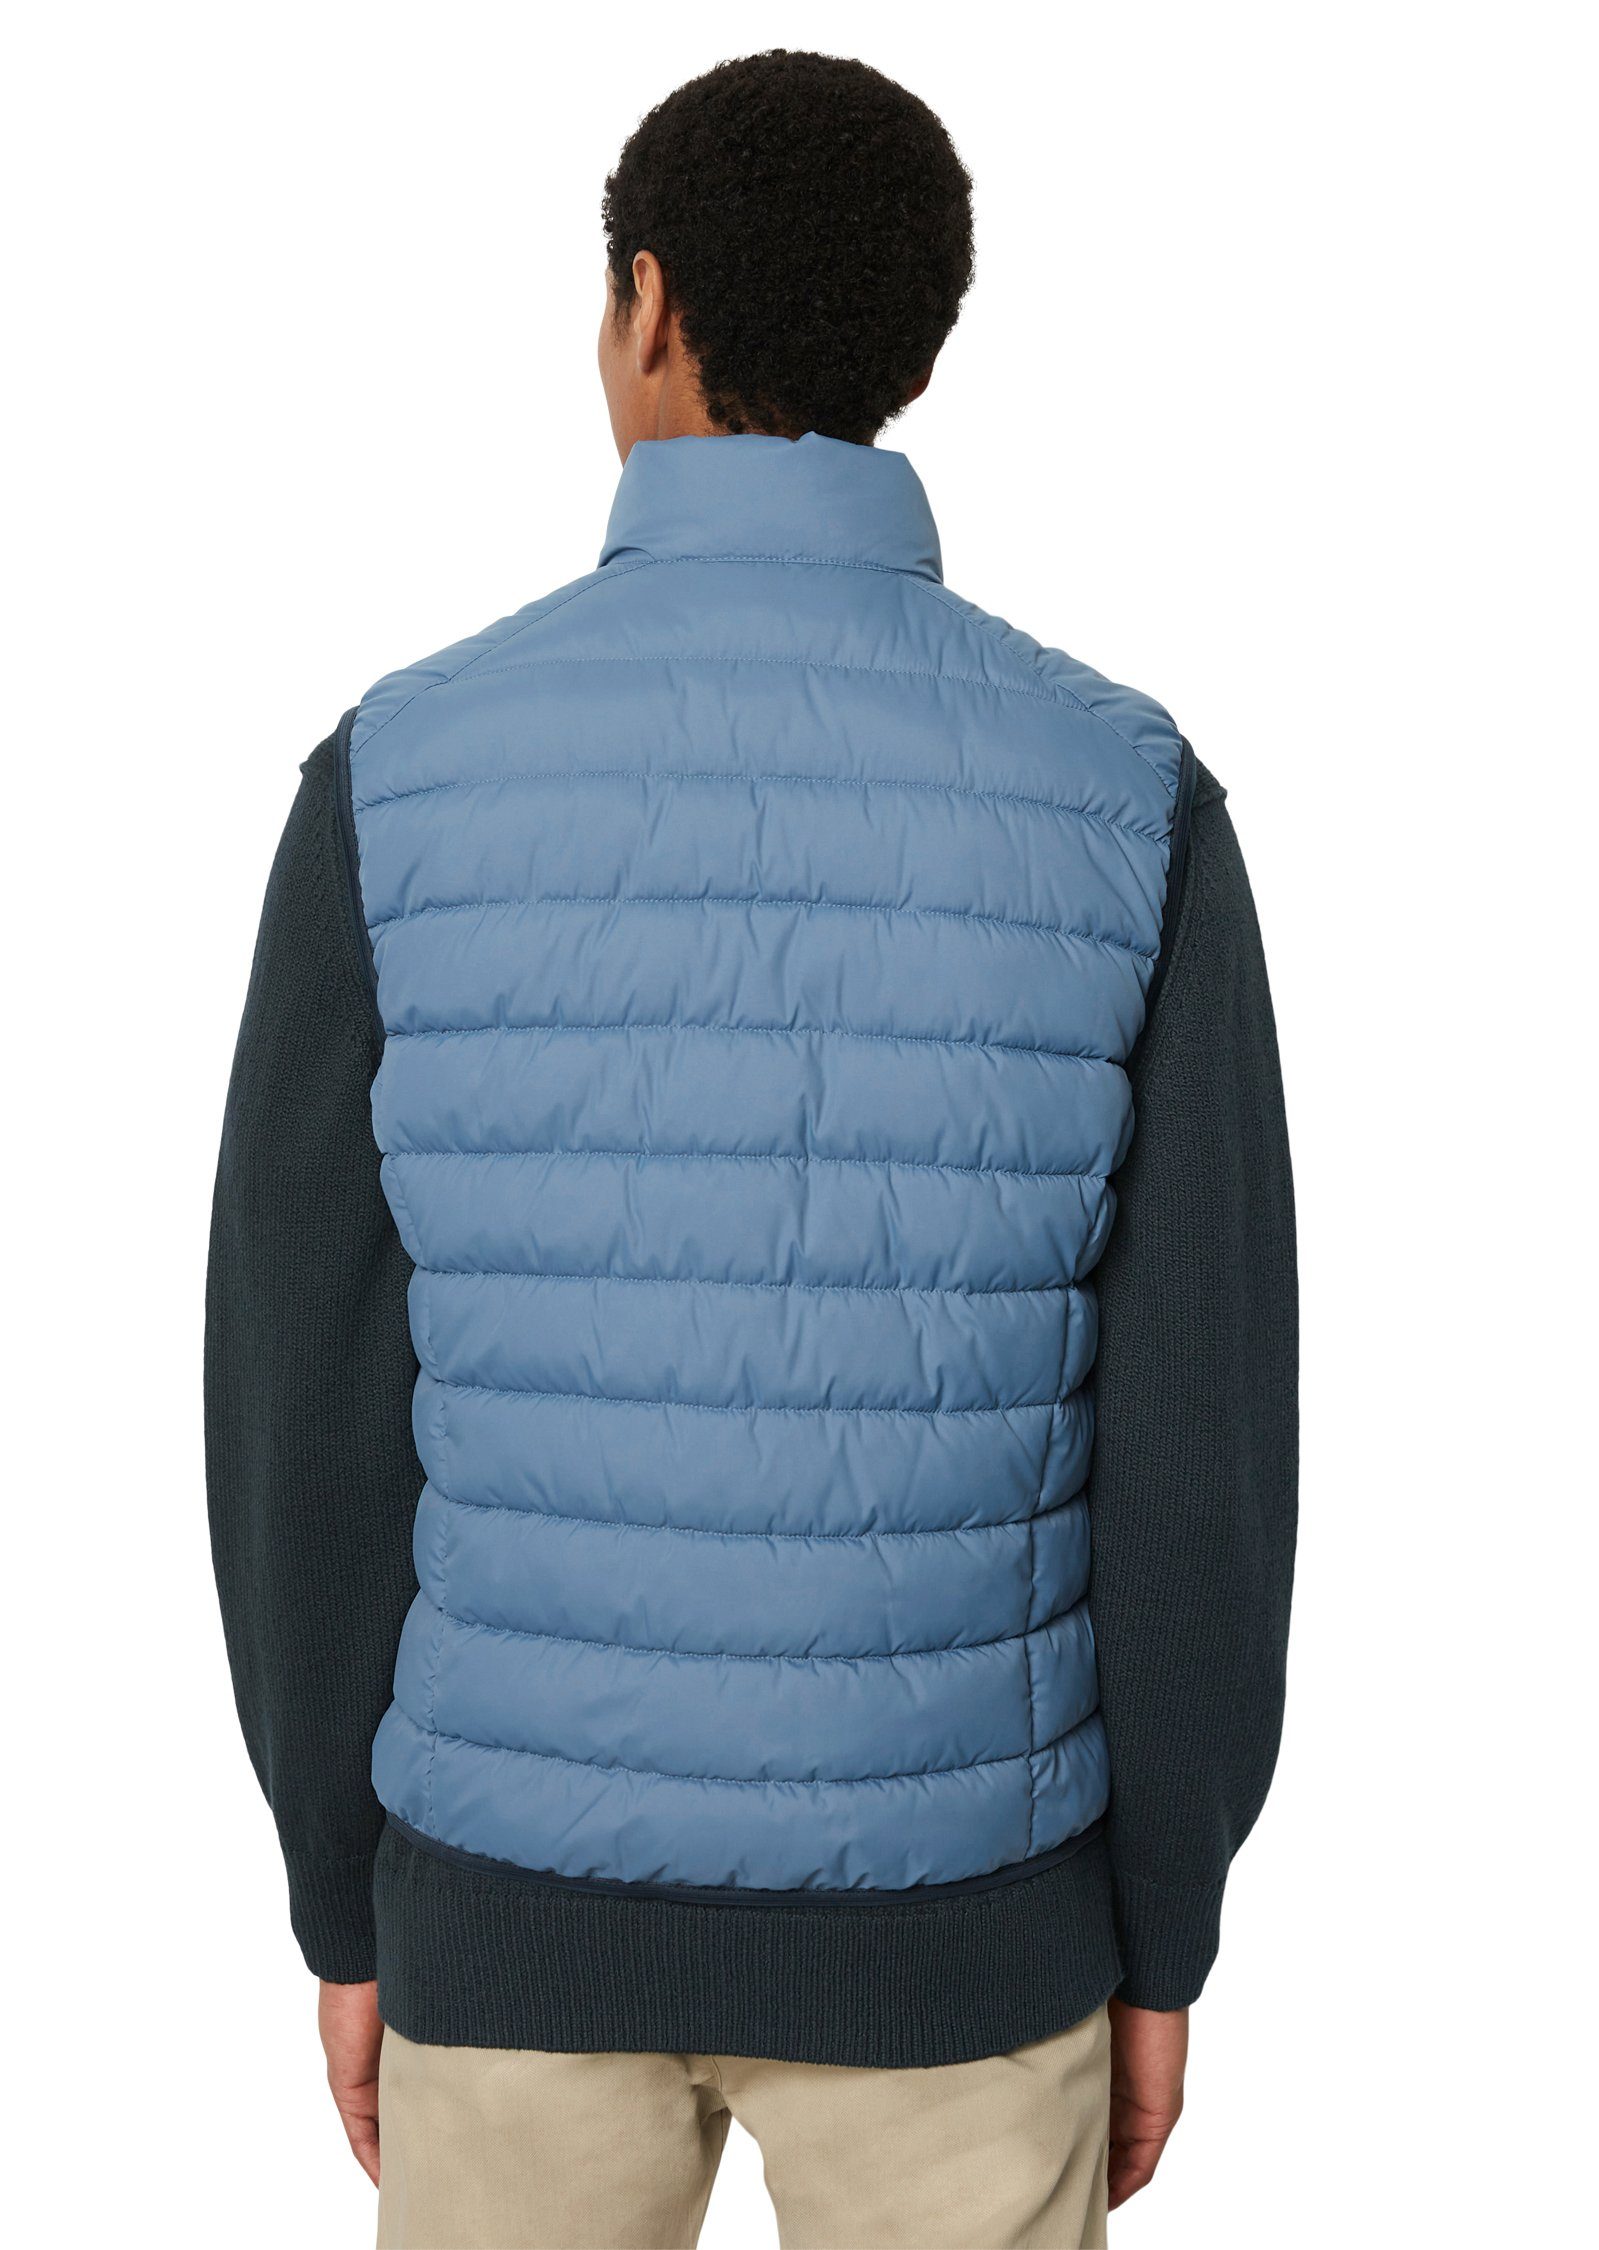 collar Marc wasserabweisender wedgewood Vest, sdnd, O'Polo Oberfläche mit Steppweste stand-up